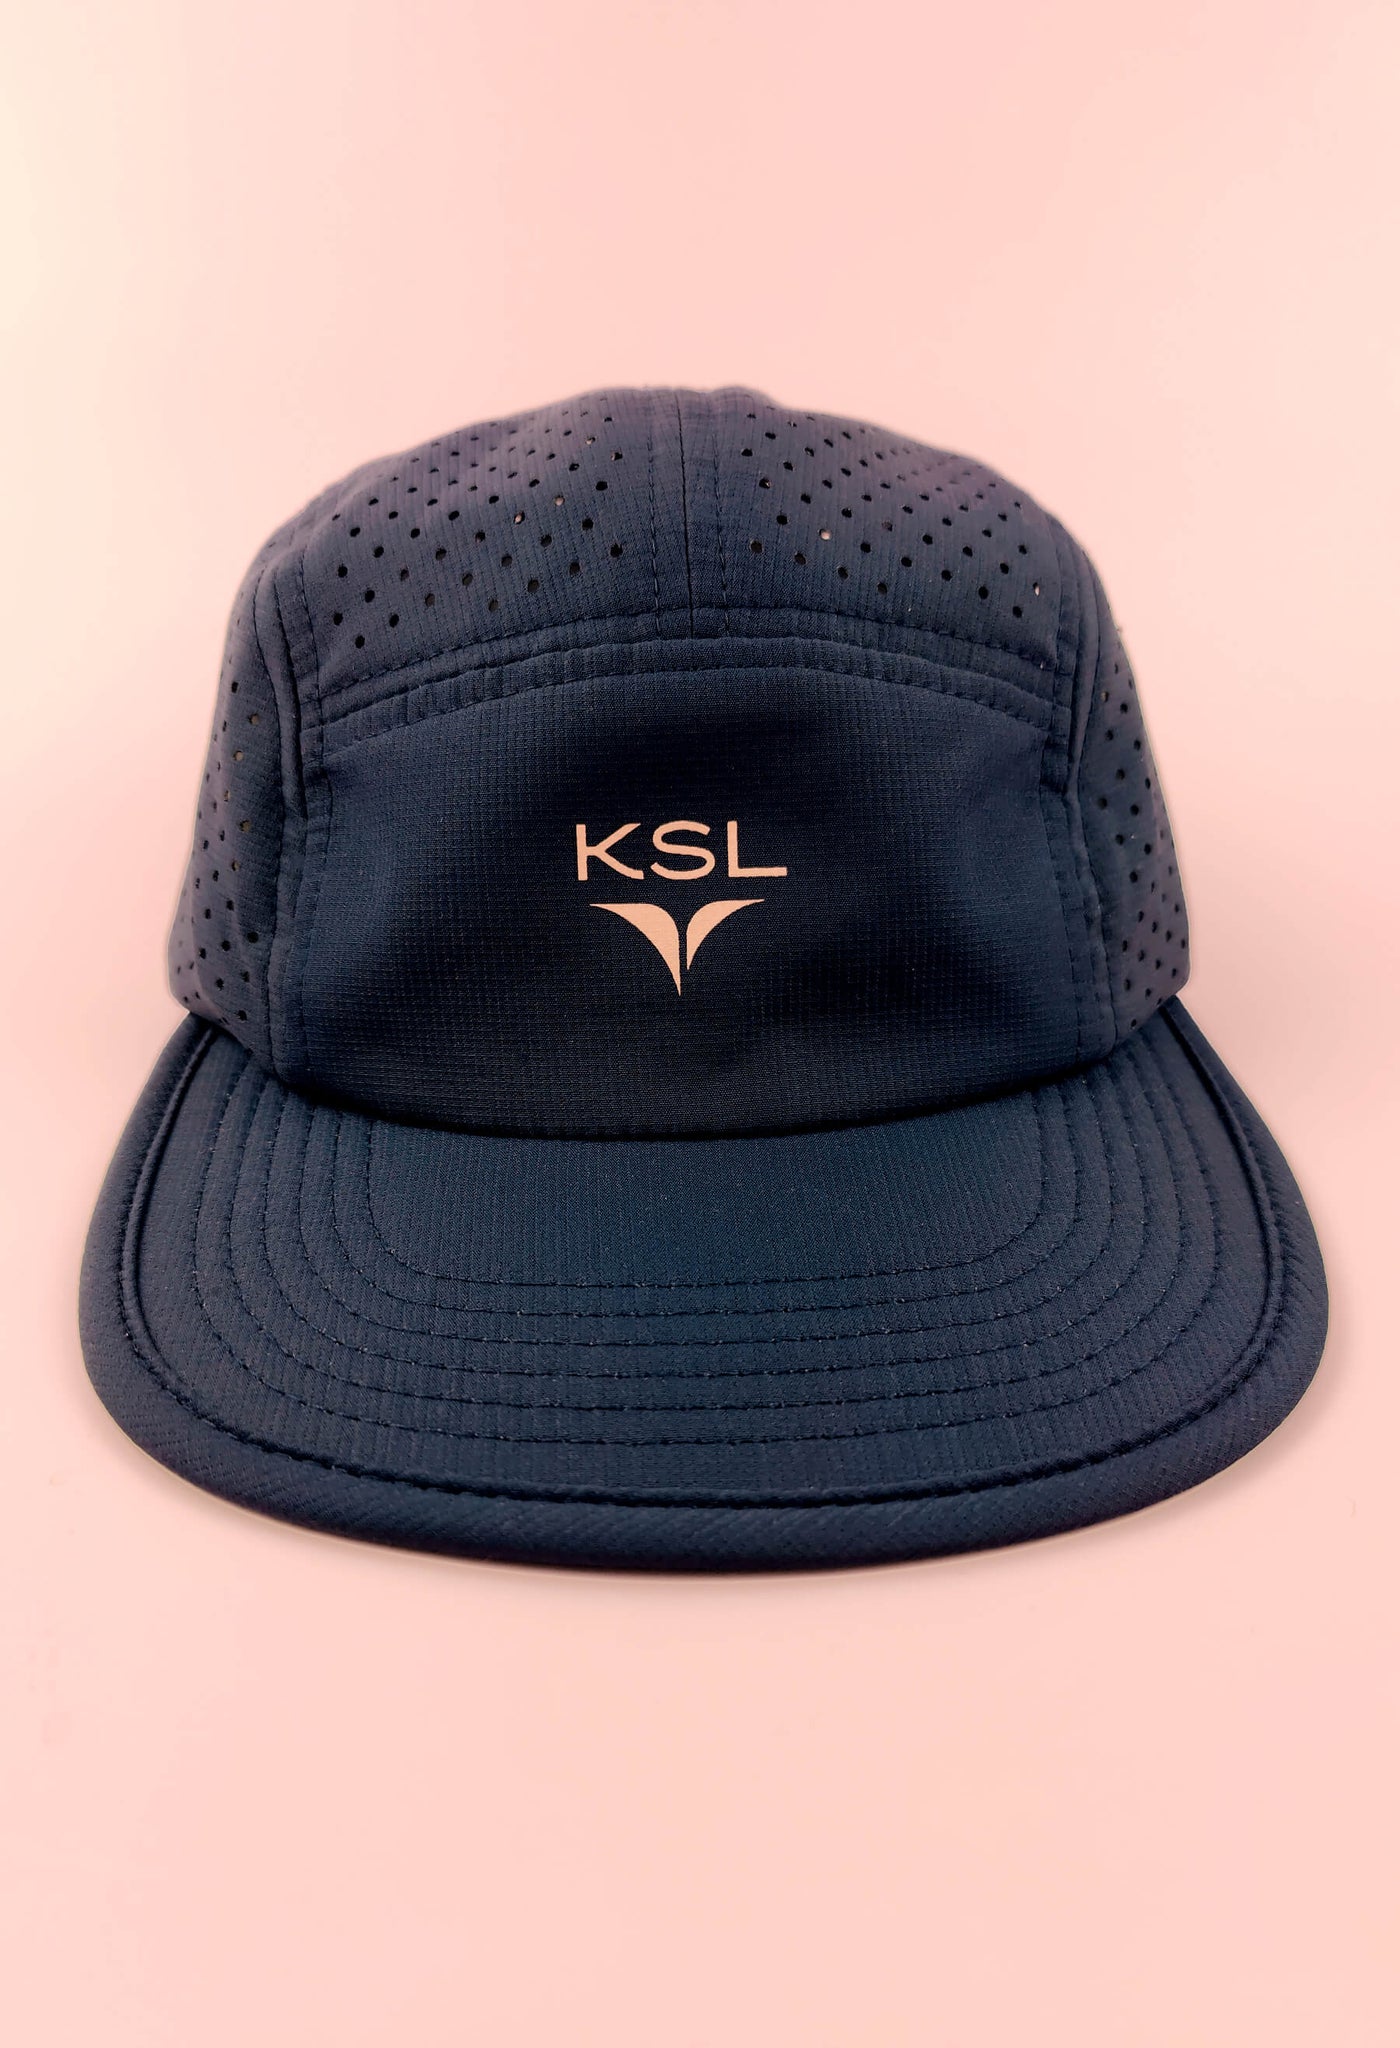 Casquette ajustable avec logo KSL